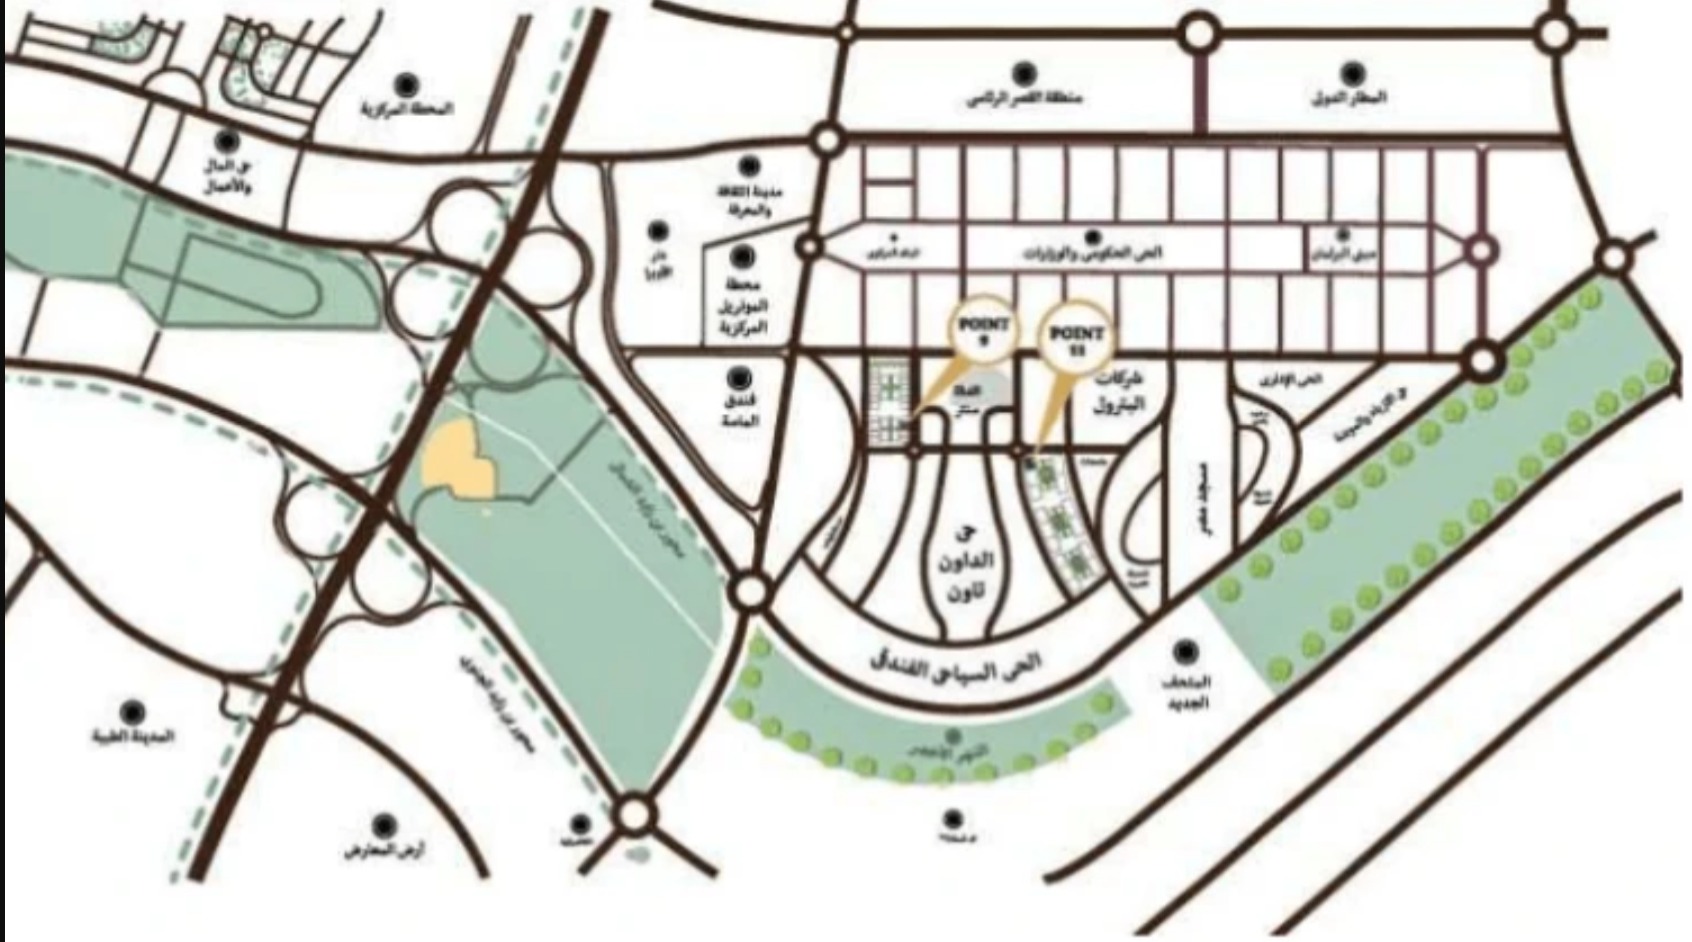 مول بوينت 11 العاصمة الإدارية الجديدة كابيتال هيلز – Point 11 New Capital Mall